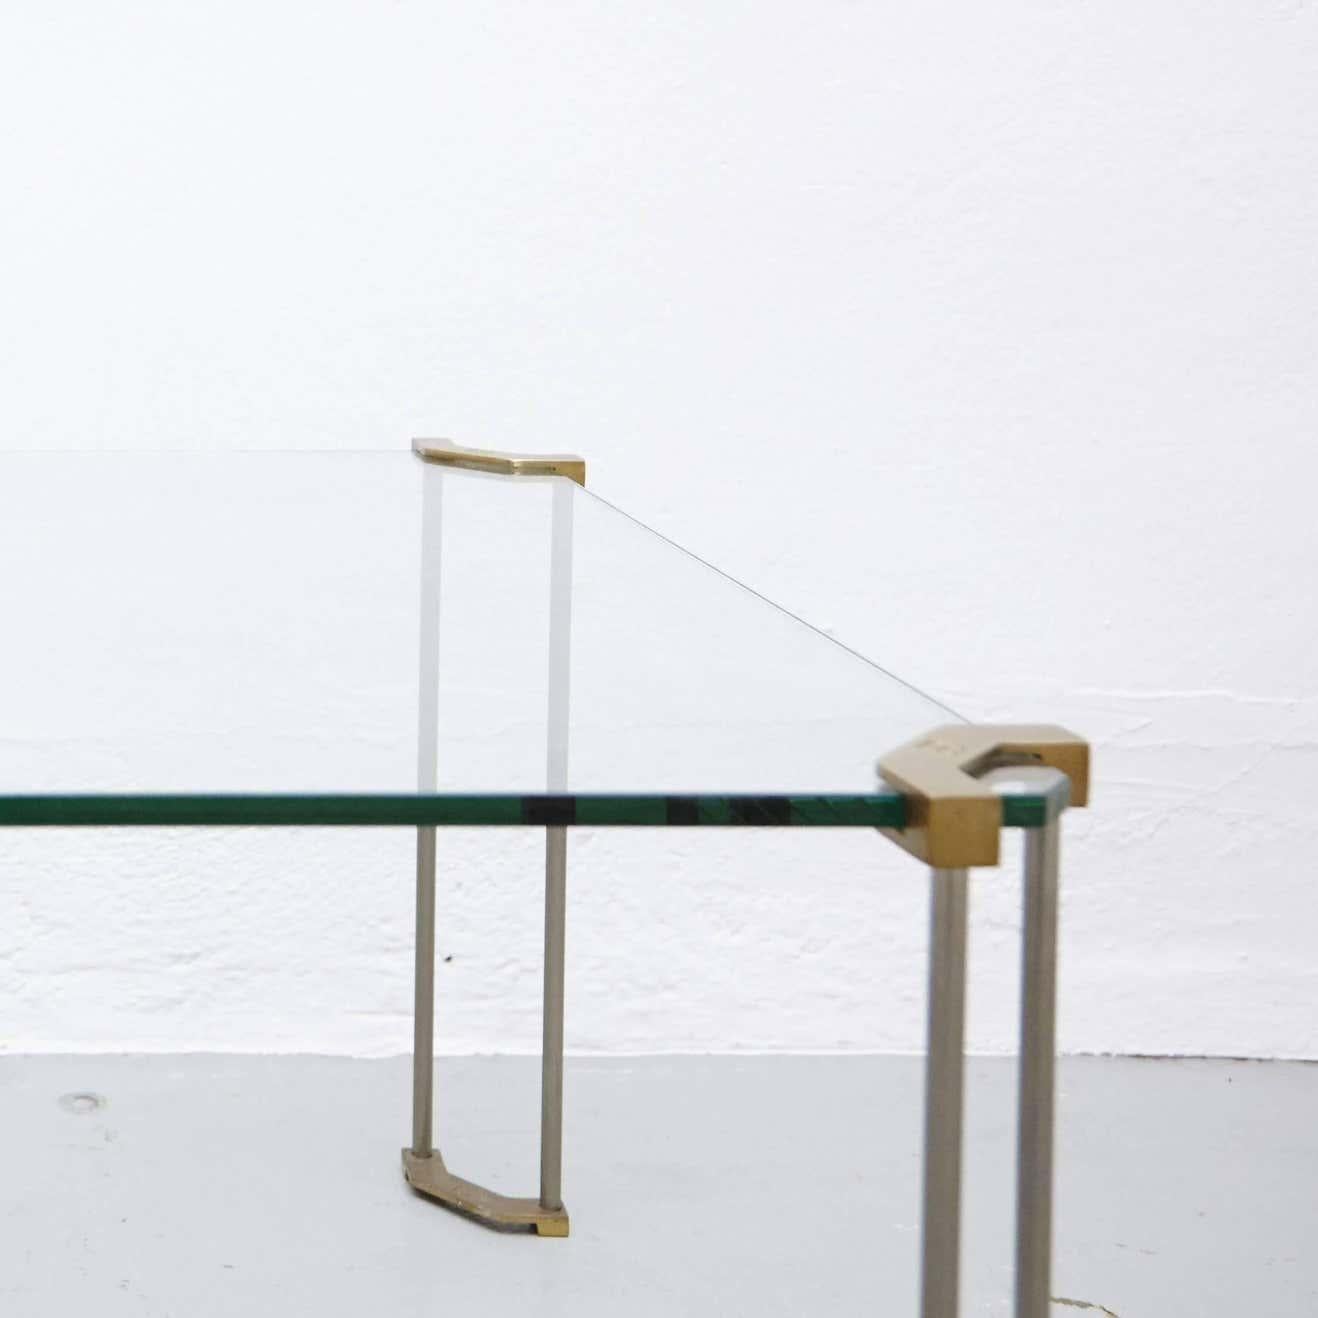 Der Tisch ist aus Glas und sandgegossenem Messing gefertigt. Die Beine werden von erfahrenen Handwerkern in den Niederlanden von Hand gegossen. Das Messing weist die typischen Merkmale des Gussverfahrens auf, und nur einige Teile sind poliert.

Nach